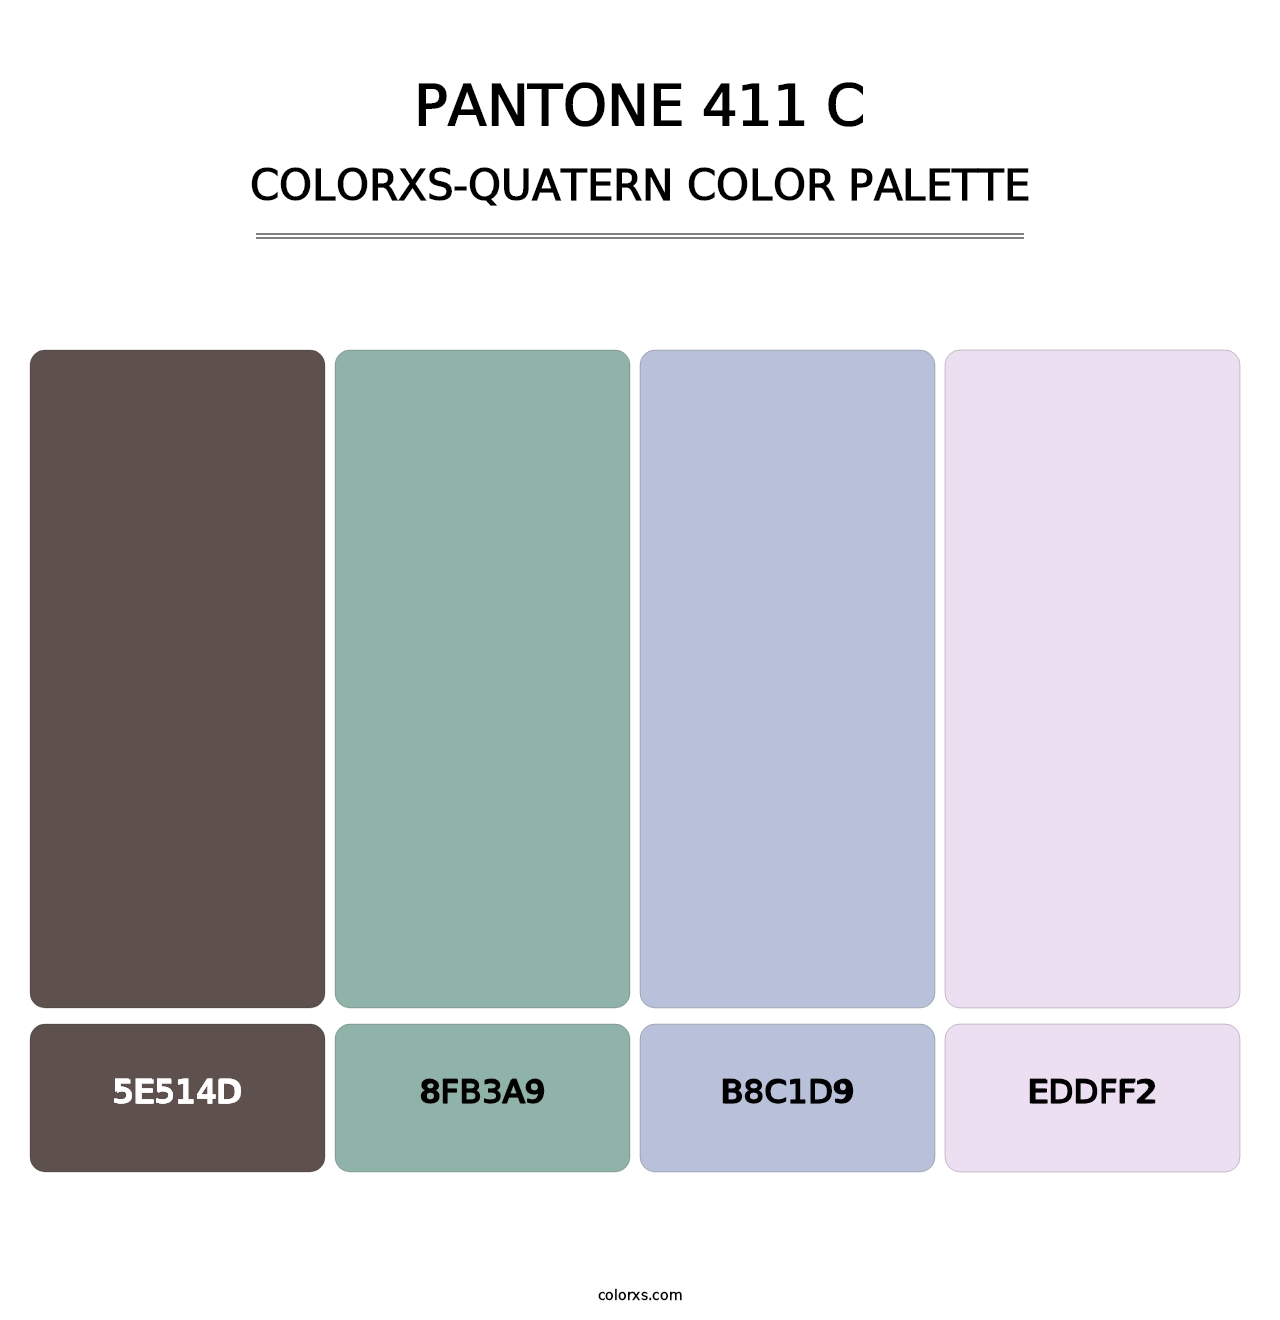 PANTONE 411 C - Colorxs Quatern Palette